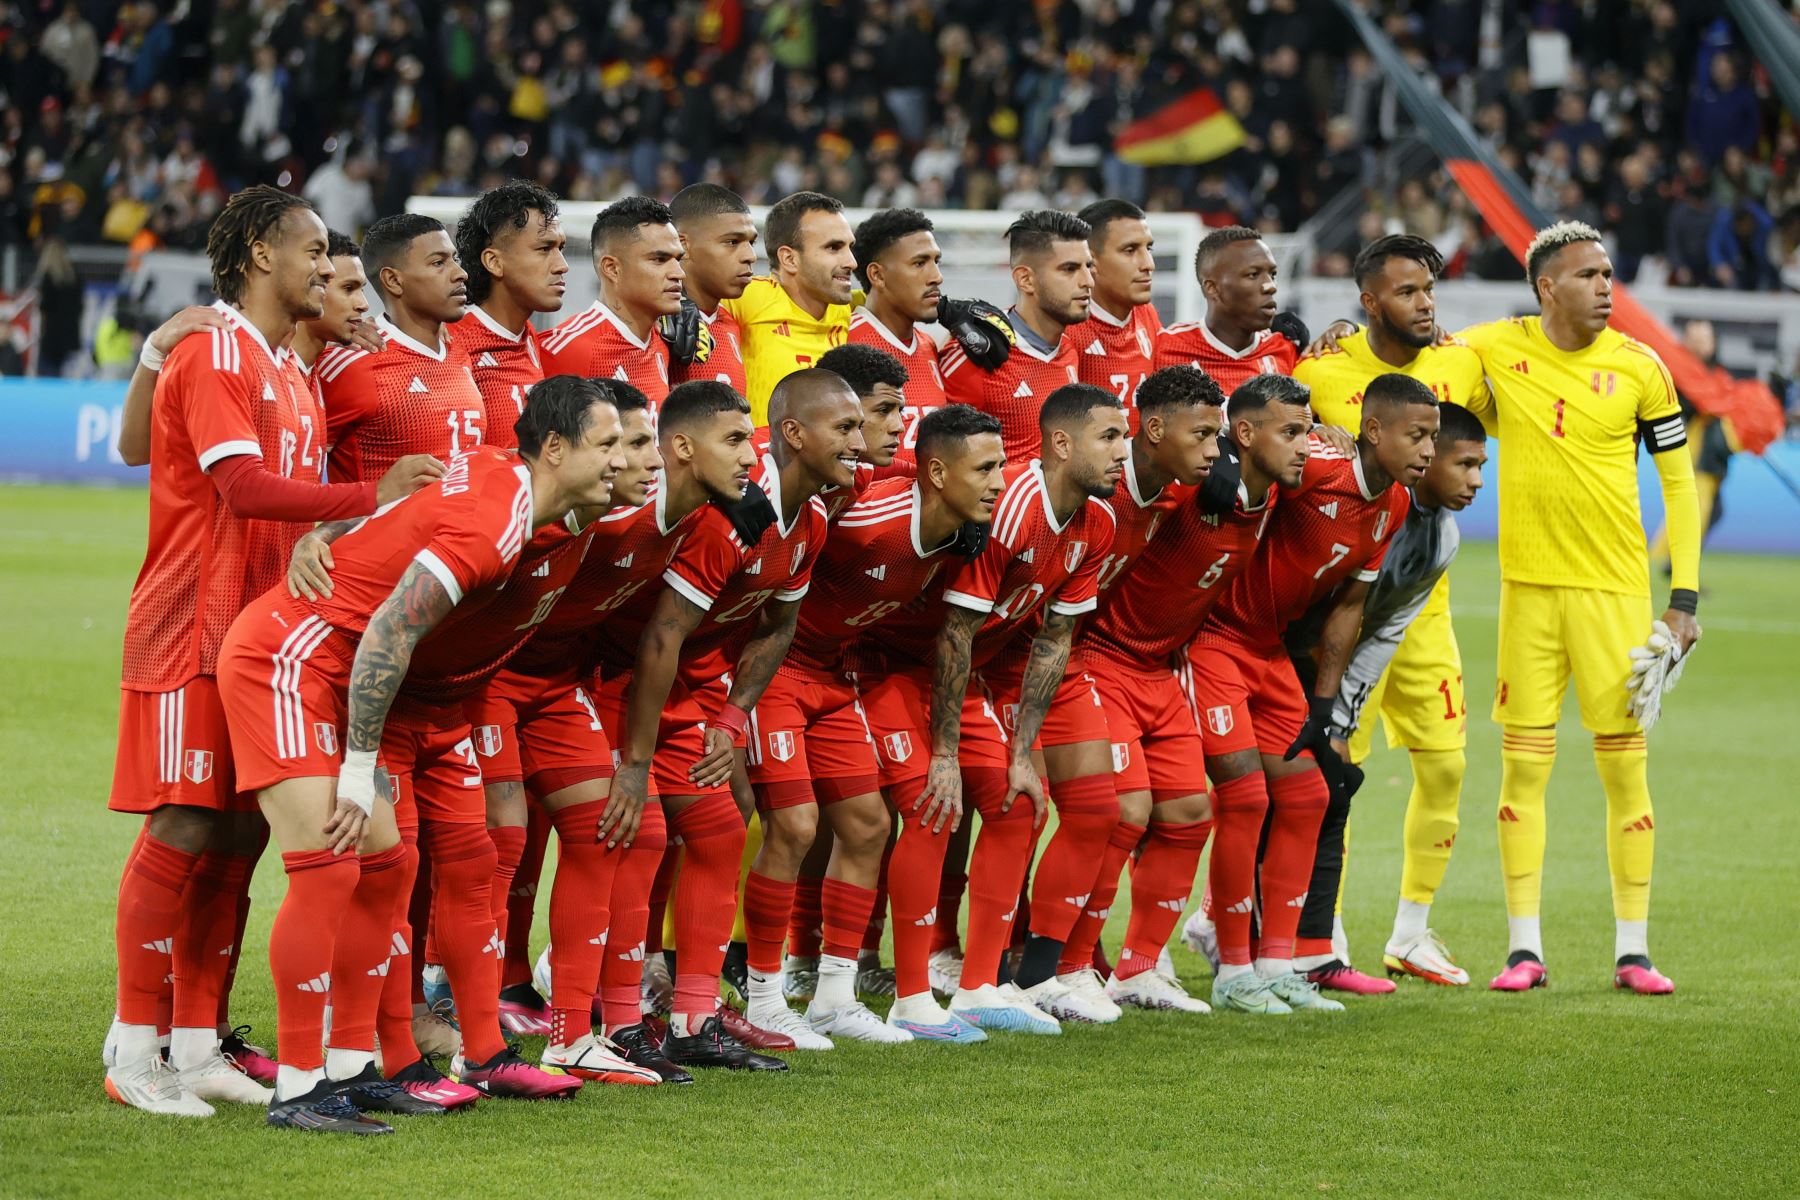 El equipo de Perú posa para una foto previo al amistoso internacional de fútbol entre Alemania y Perú en Mainz, Alemania. Foto: EFE